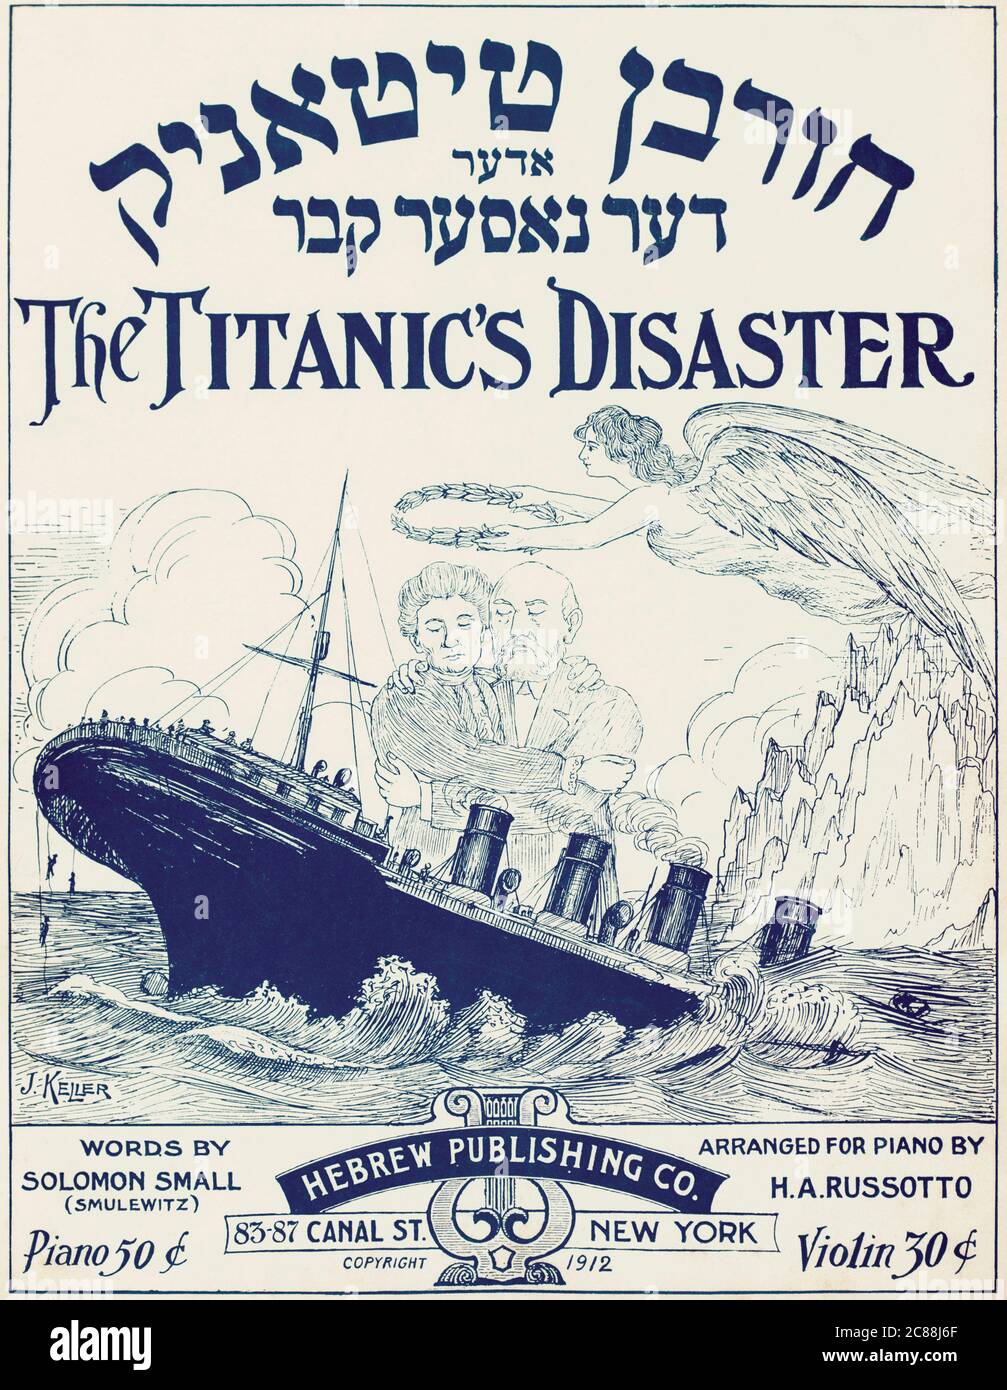 Couverture de partitions, écrites en hébreu et en anglais, pour le désastre  du Titanic publié à New York en 1912 dans les mois qui ont suivi le  naufrage du navire. Œuvres de